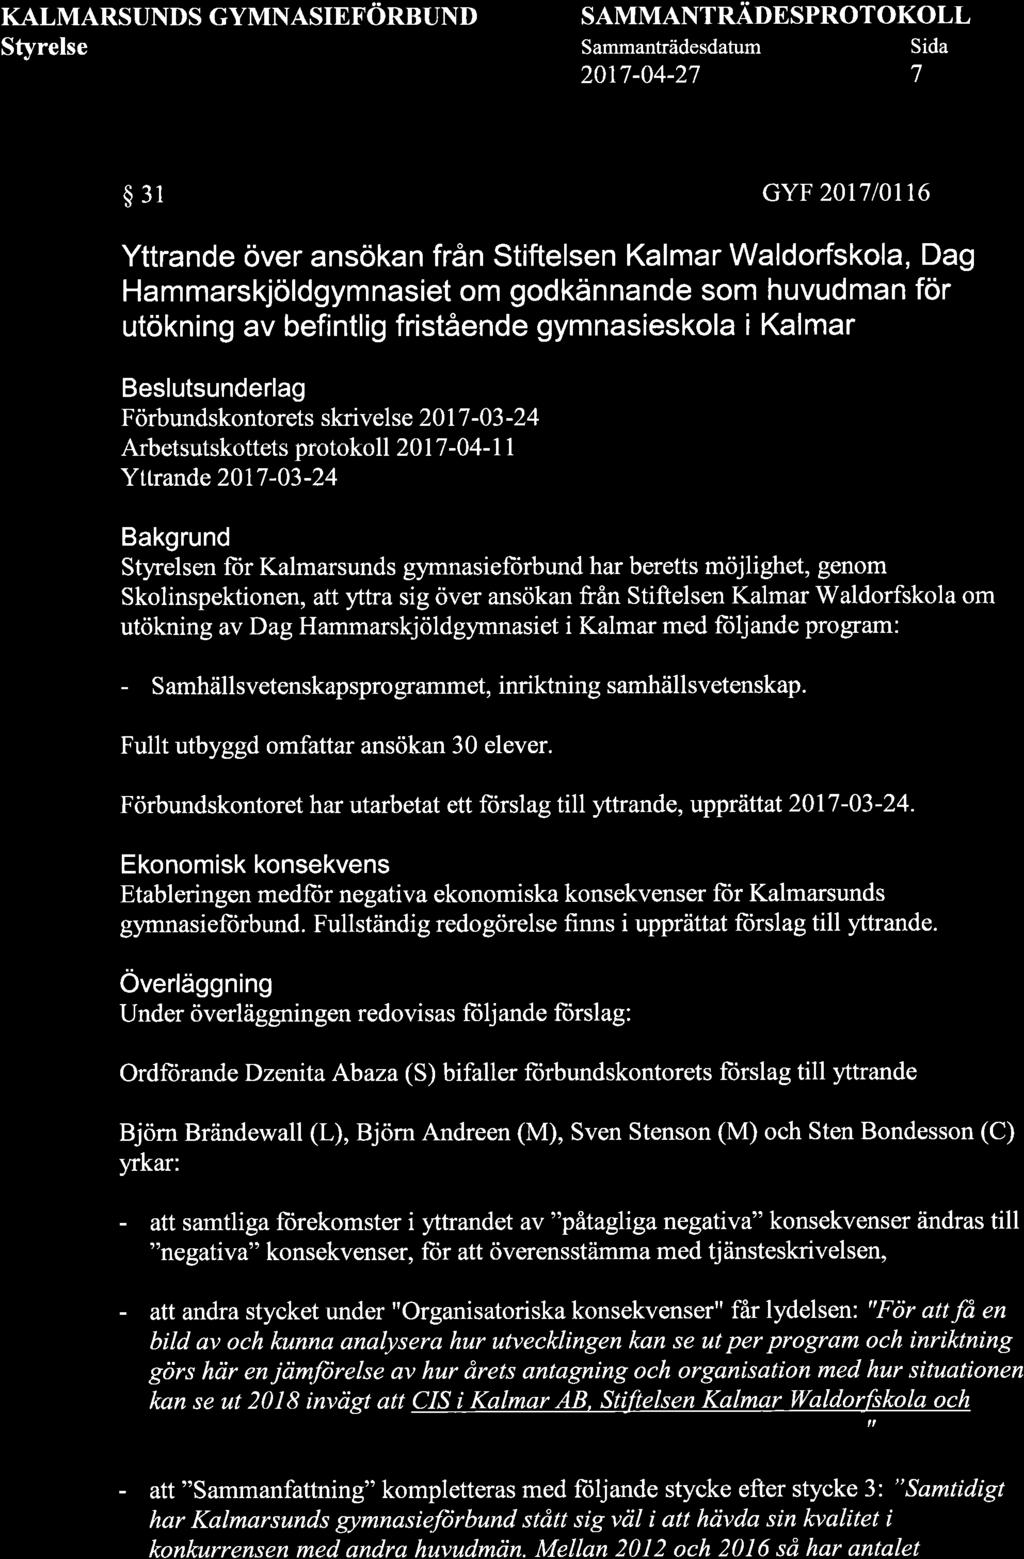 KALMARSUNDS GYMNASIEFORBUND SAMMANTRÄDESPROTOKOLL 2017-04-27 7 $31 GYF 2017l0tt6 Yttrande över ansökan från Stiftelsen Kalmar Waldorfskola, Dag Hammarskjöldgymnas et om godkännande som huvudman för